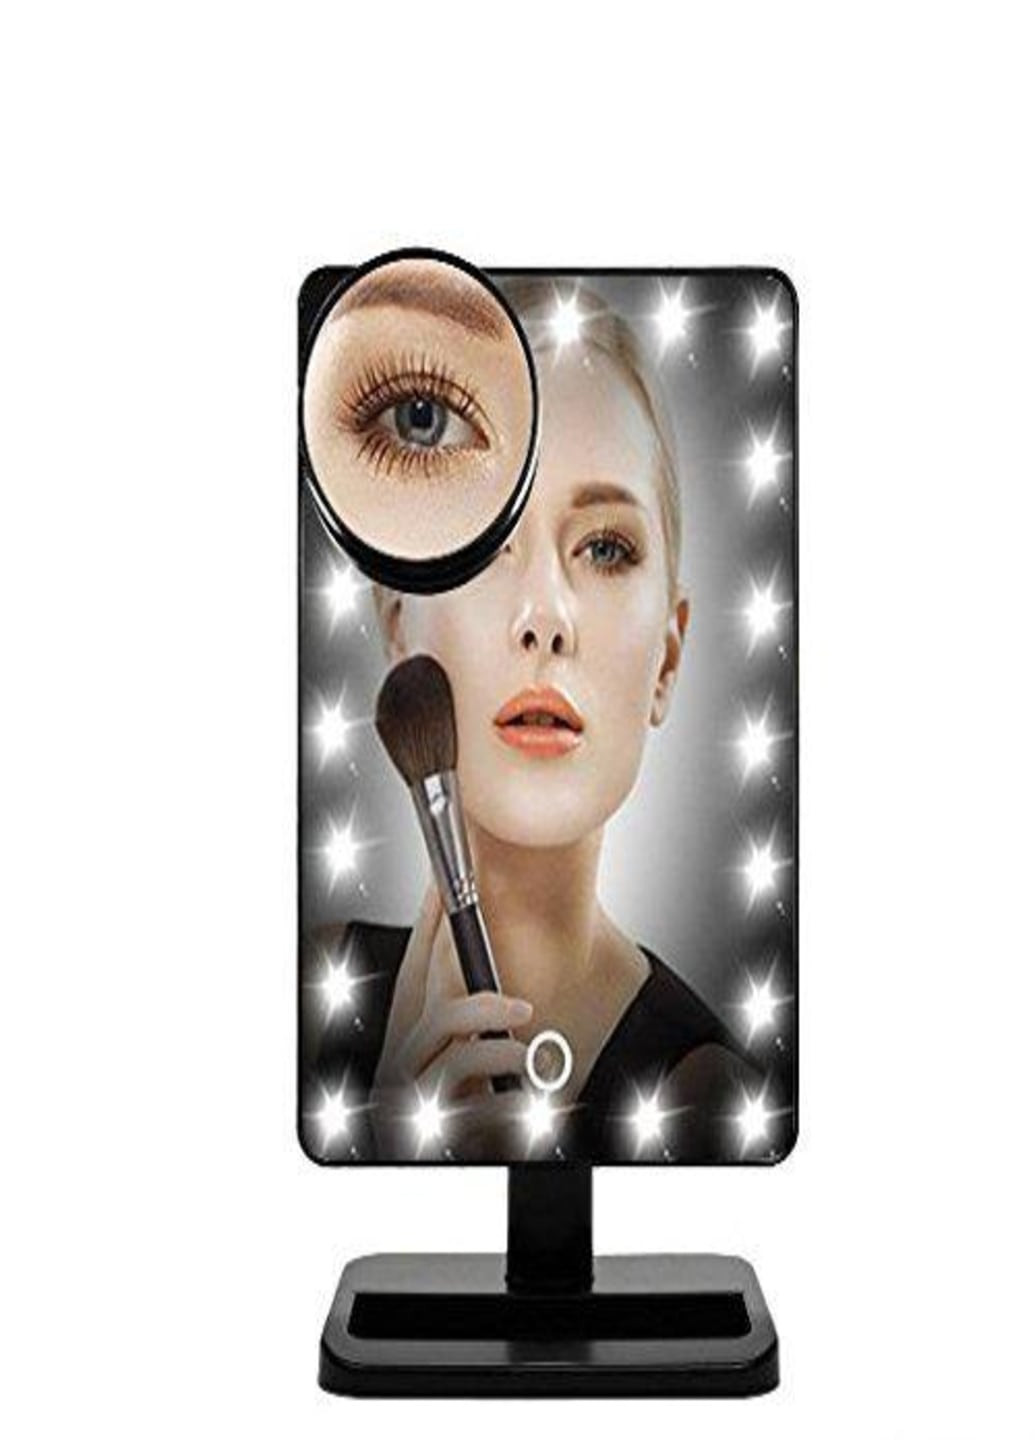 Настольное зеркало для макияжа Magic с LED подсветкой Black (654708) Francesco Marconi (213875618)